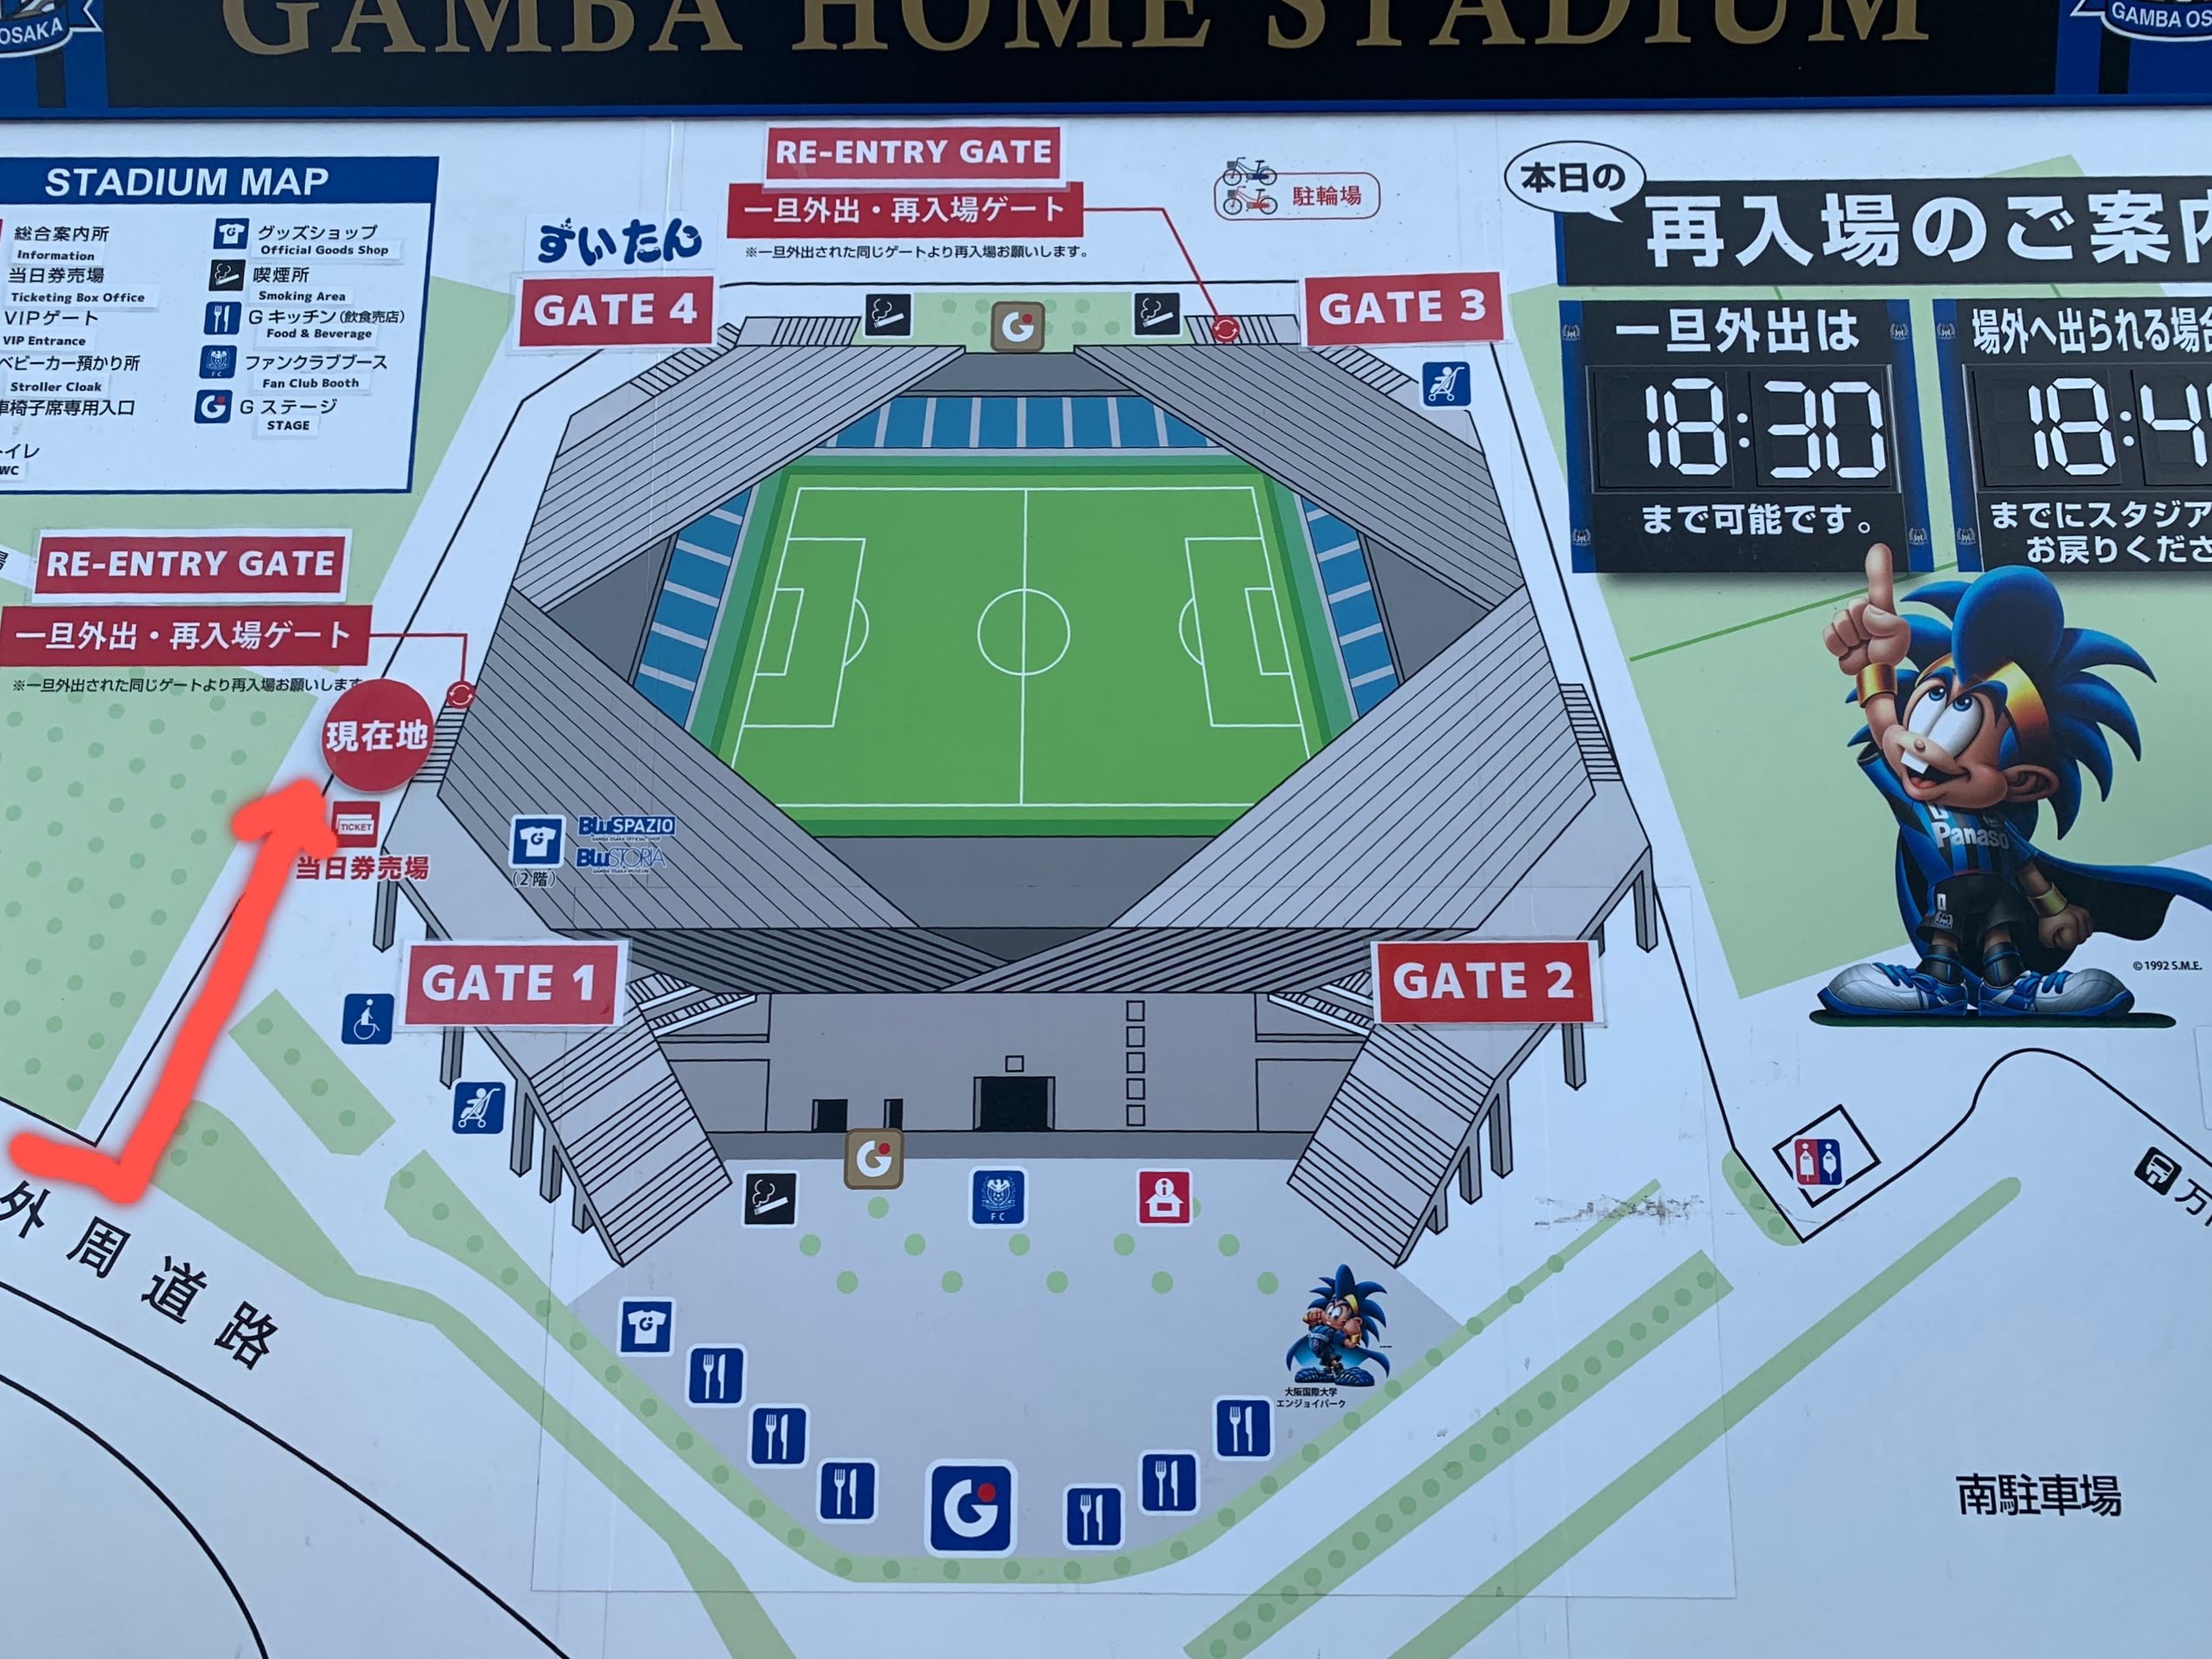 初めてでも迷わない パナソニックスタジアム吹田へのアクセス方法 サッカー観戦のトリセツ